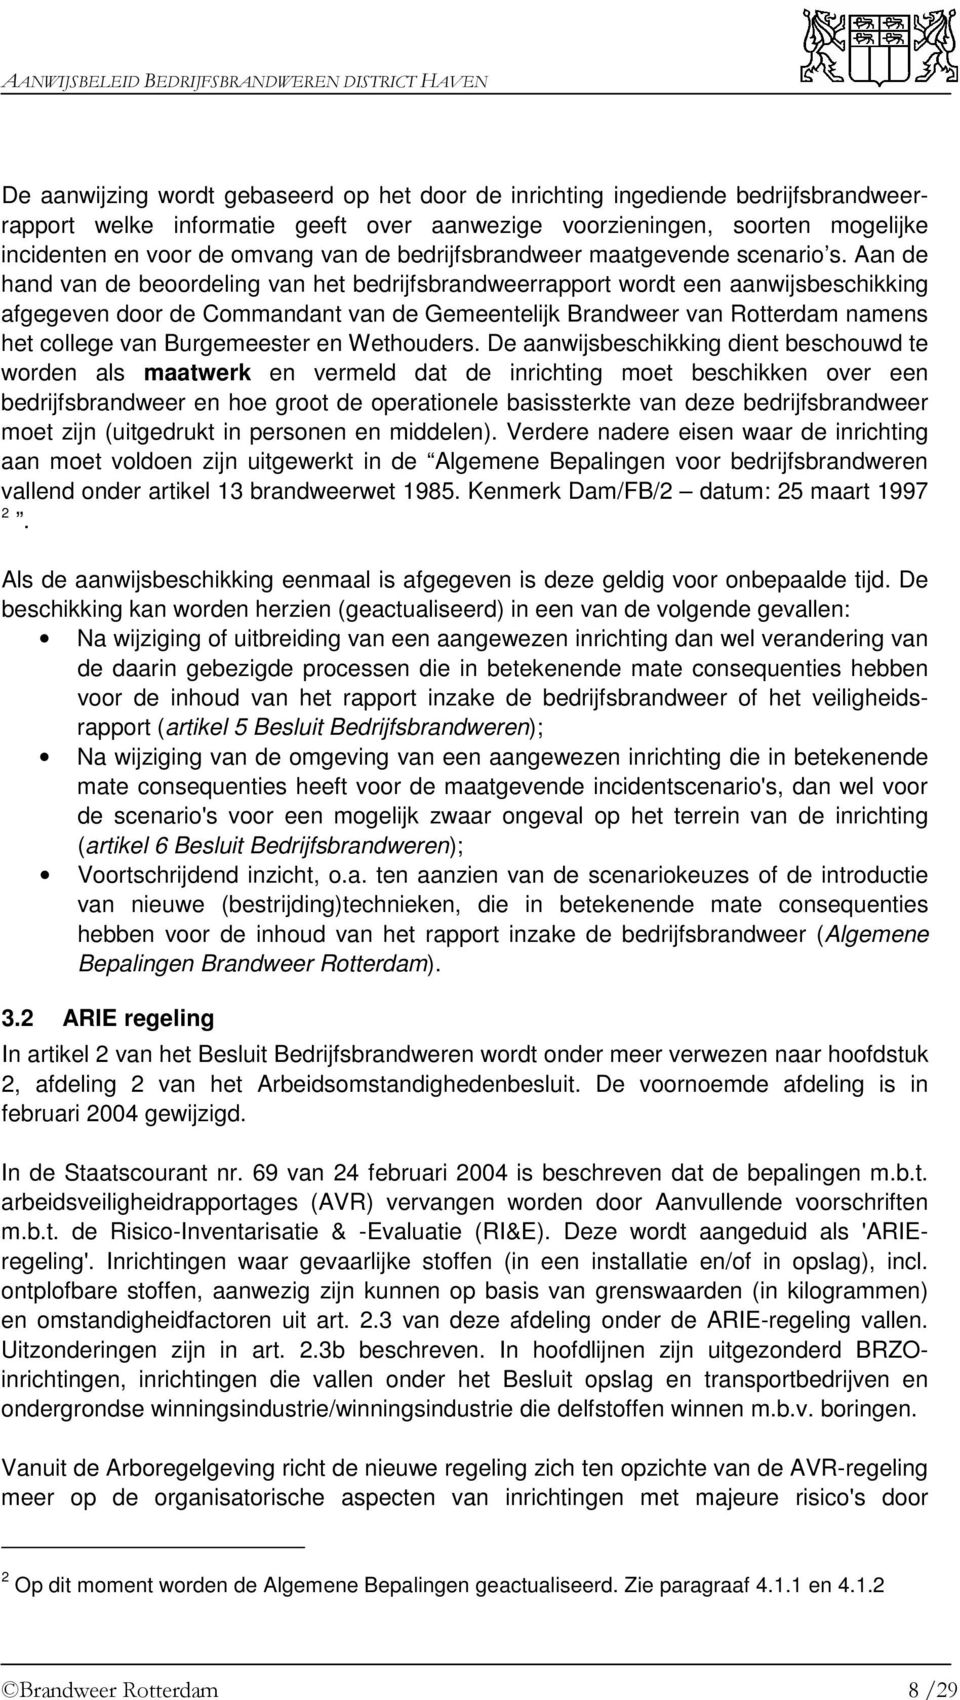 Aan de hand van de beoordeling van het bedrijfsbrandweerrapport wordt een aanwijsbeschikking afgegeven door de Commandant van de Gemeentelijk Brandweer van Rotterdam namens het college van